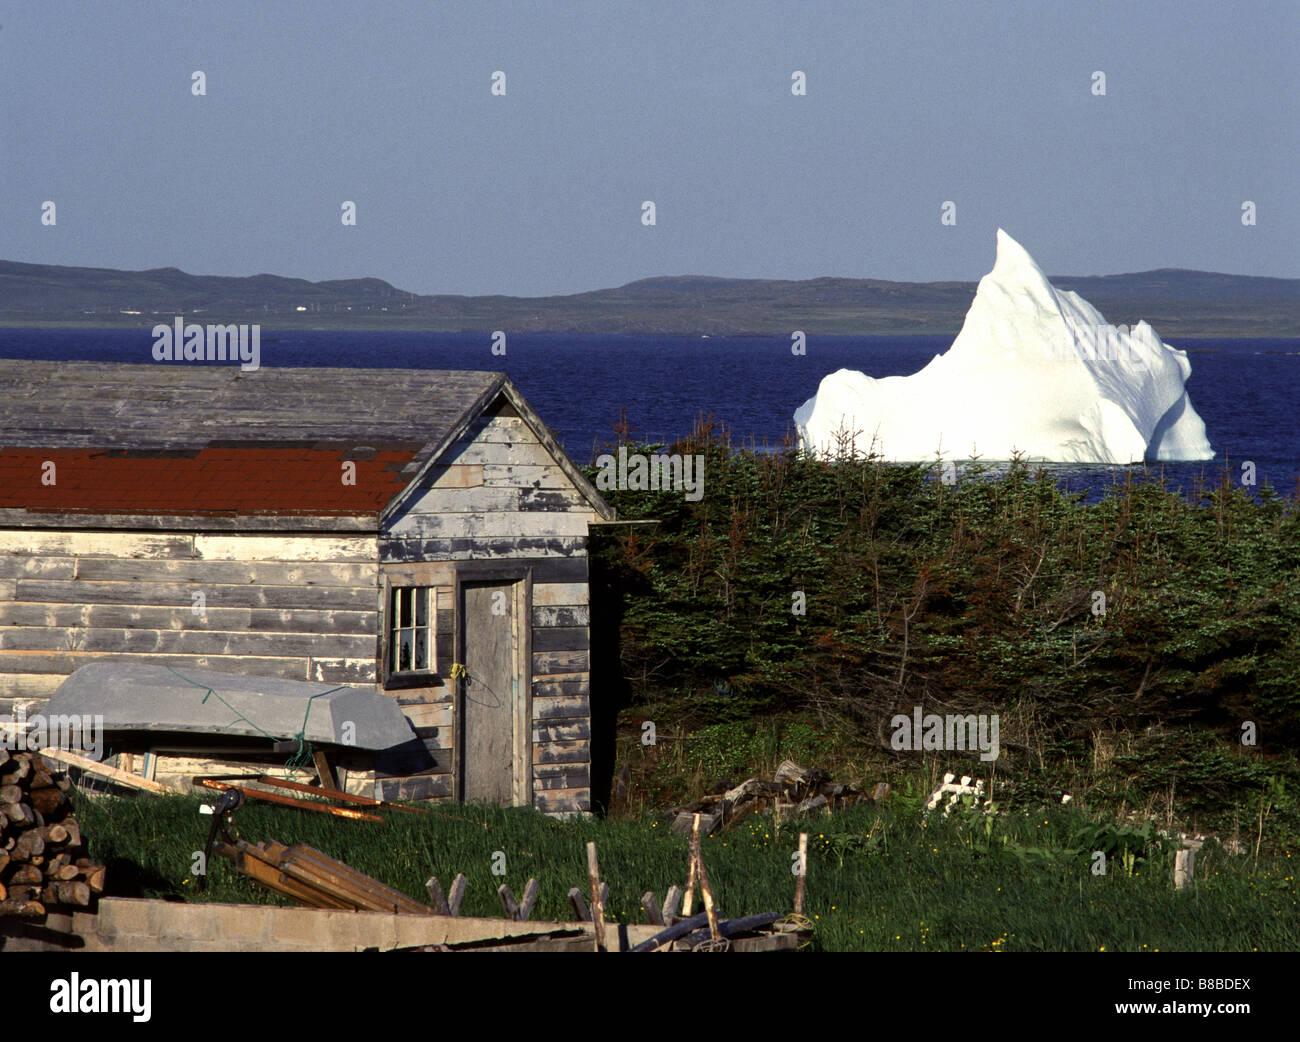 Imageworks Photographic; Old House Iceberg ion Cove, Newfoundland Stock Photo